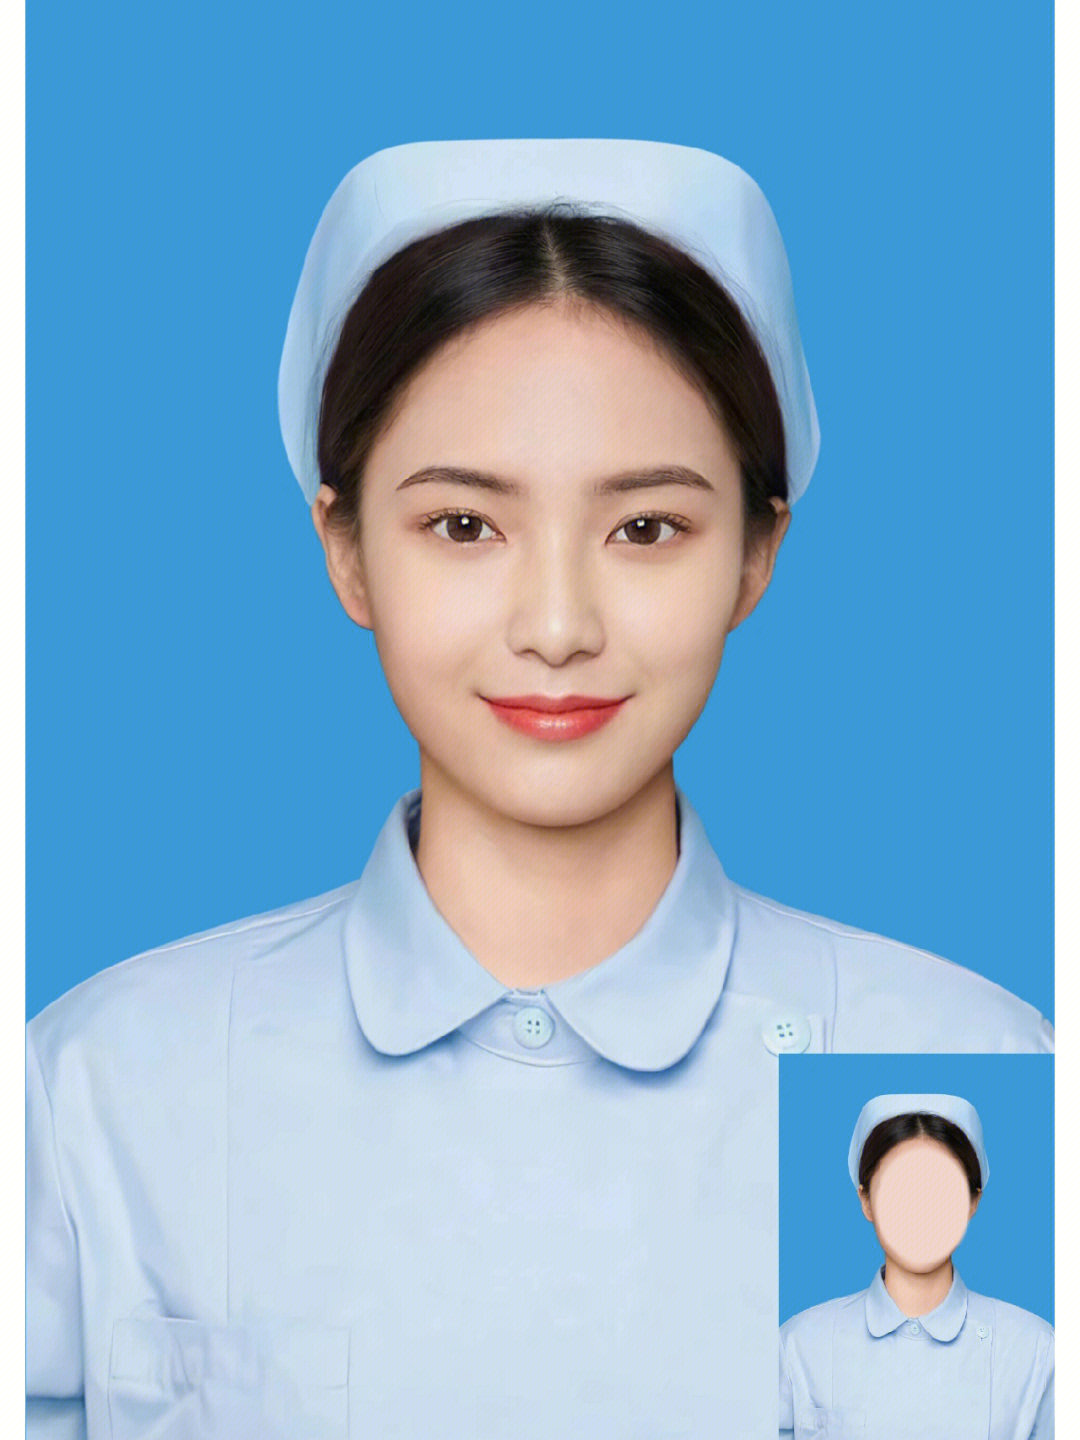 护士证件照来一波只要有张正脸照片即可修